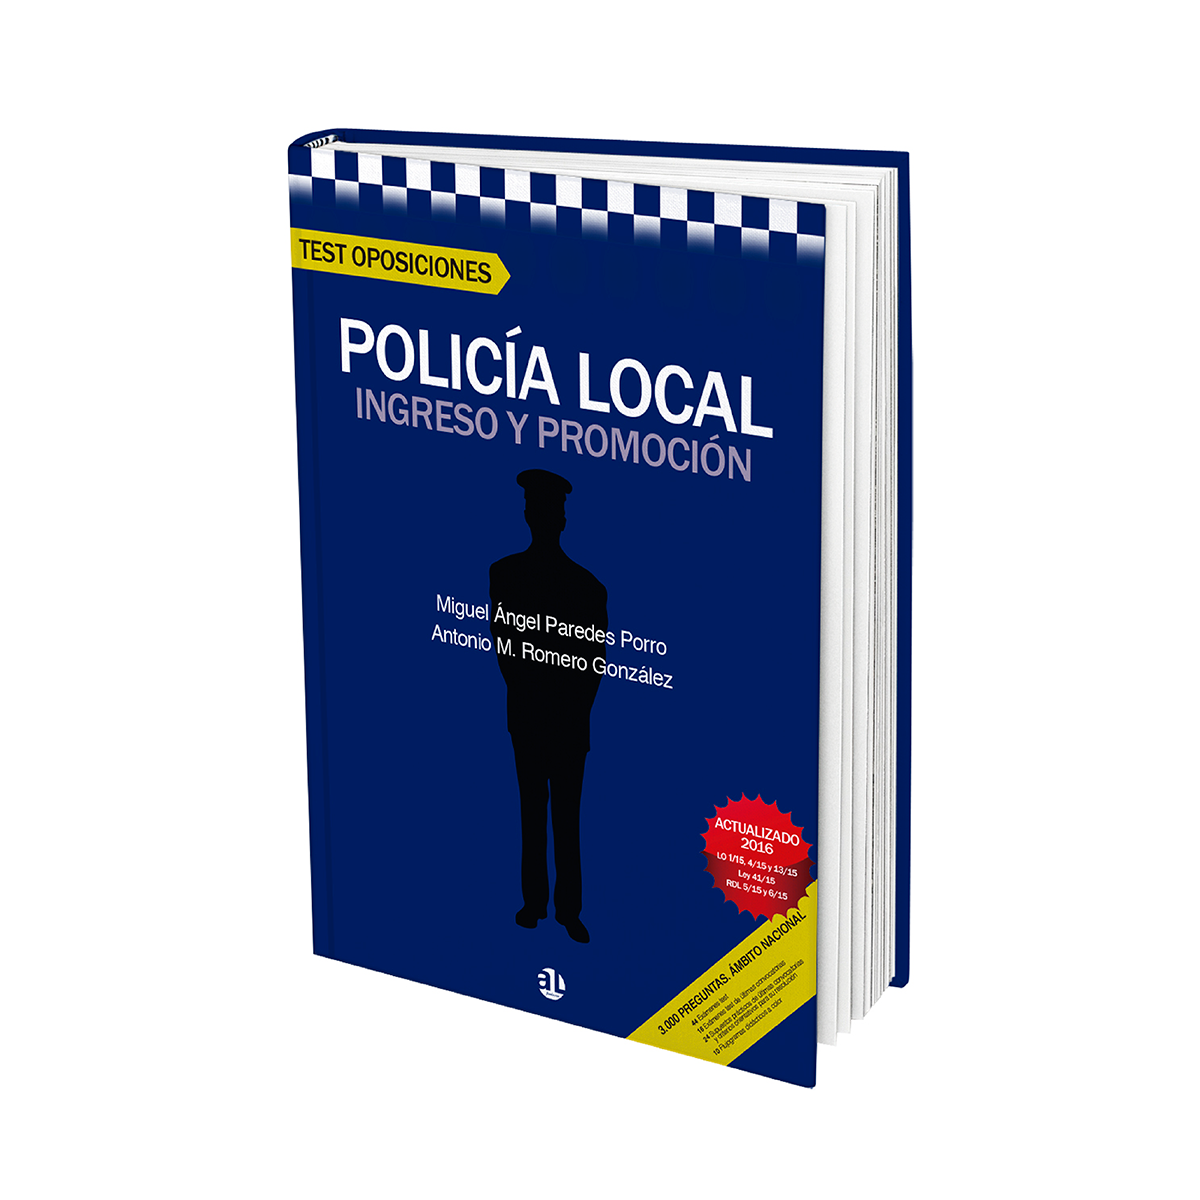 Test Oposiciones Policía Local, Miguel Ángel Paredes Porro, AL Fundación, libro